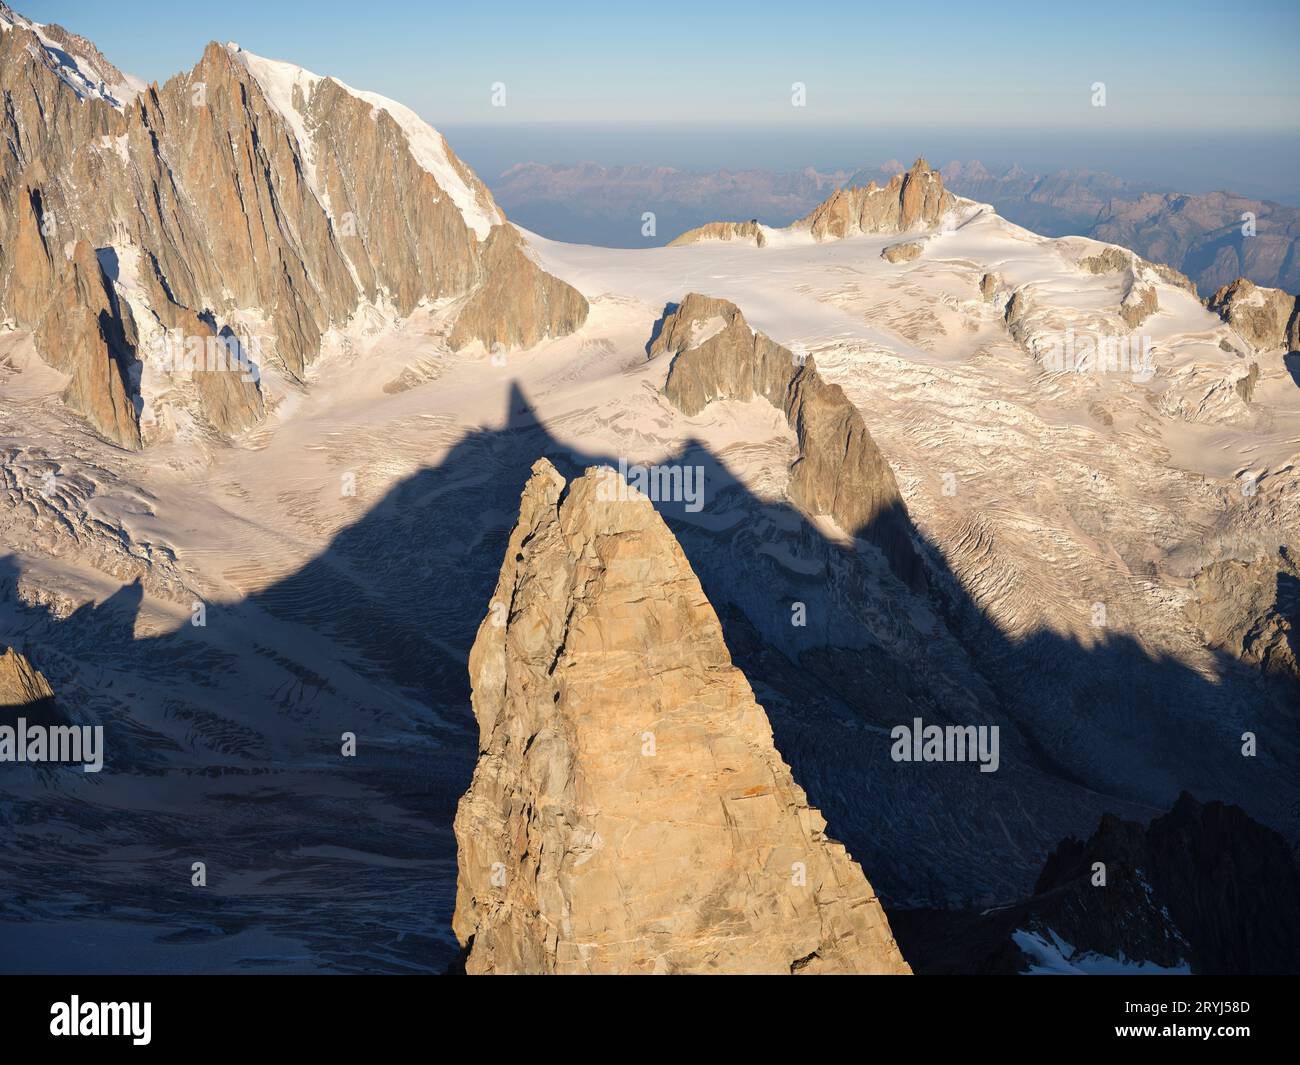 VUE AÉRIENNE. Dent du géant (altitude : 4013 mètres) et son ombre sur le glacier géant. Chamonix, haute-Savoie, Auvergne-Rhône-Alpes, France. Banque D'Images